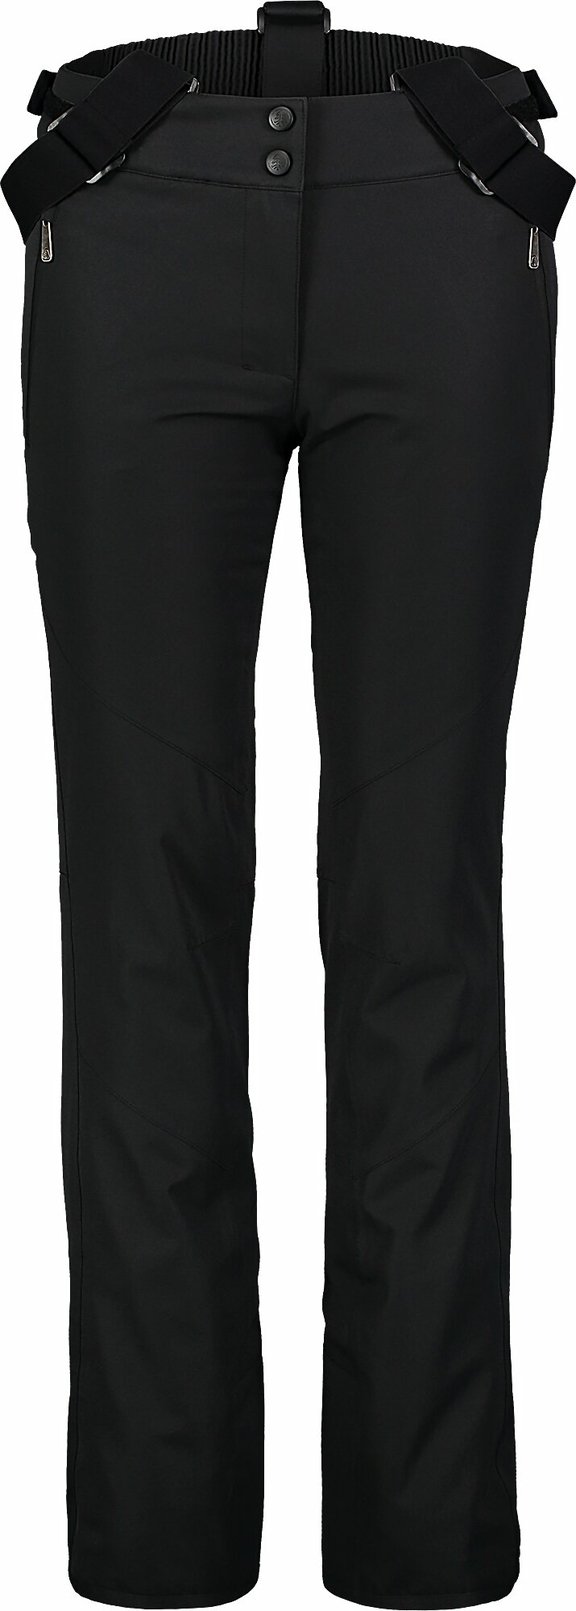 Dámské lyžařské kalhoty NORDBLANC - Calmness - NBWP7331